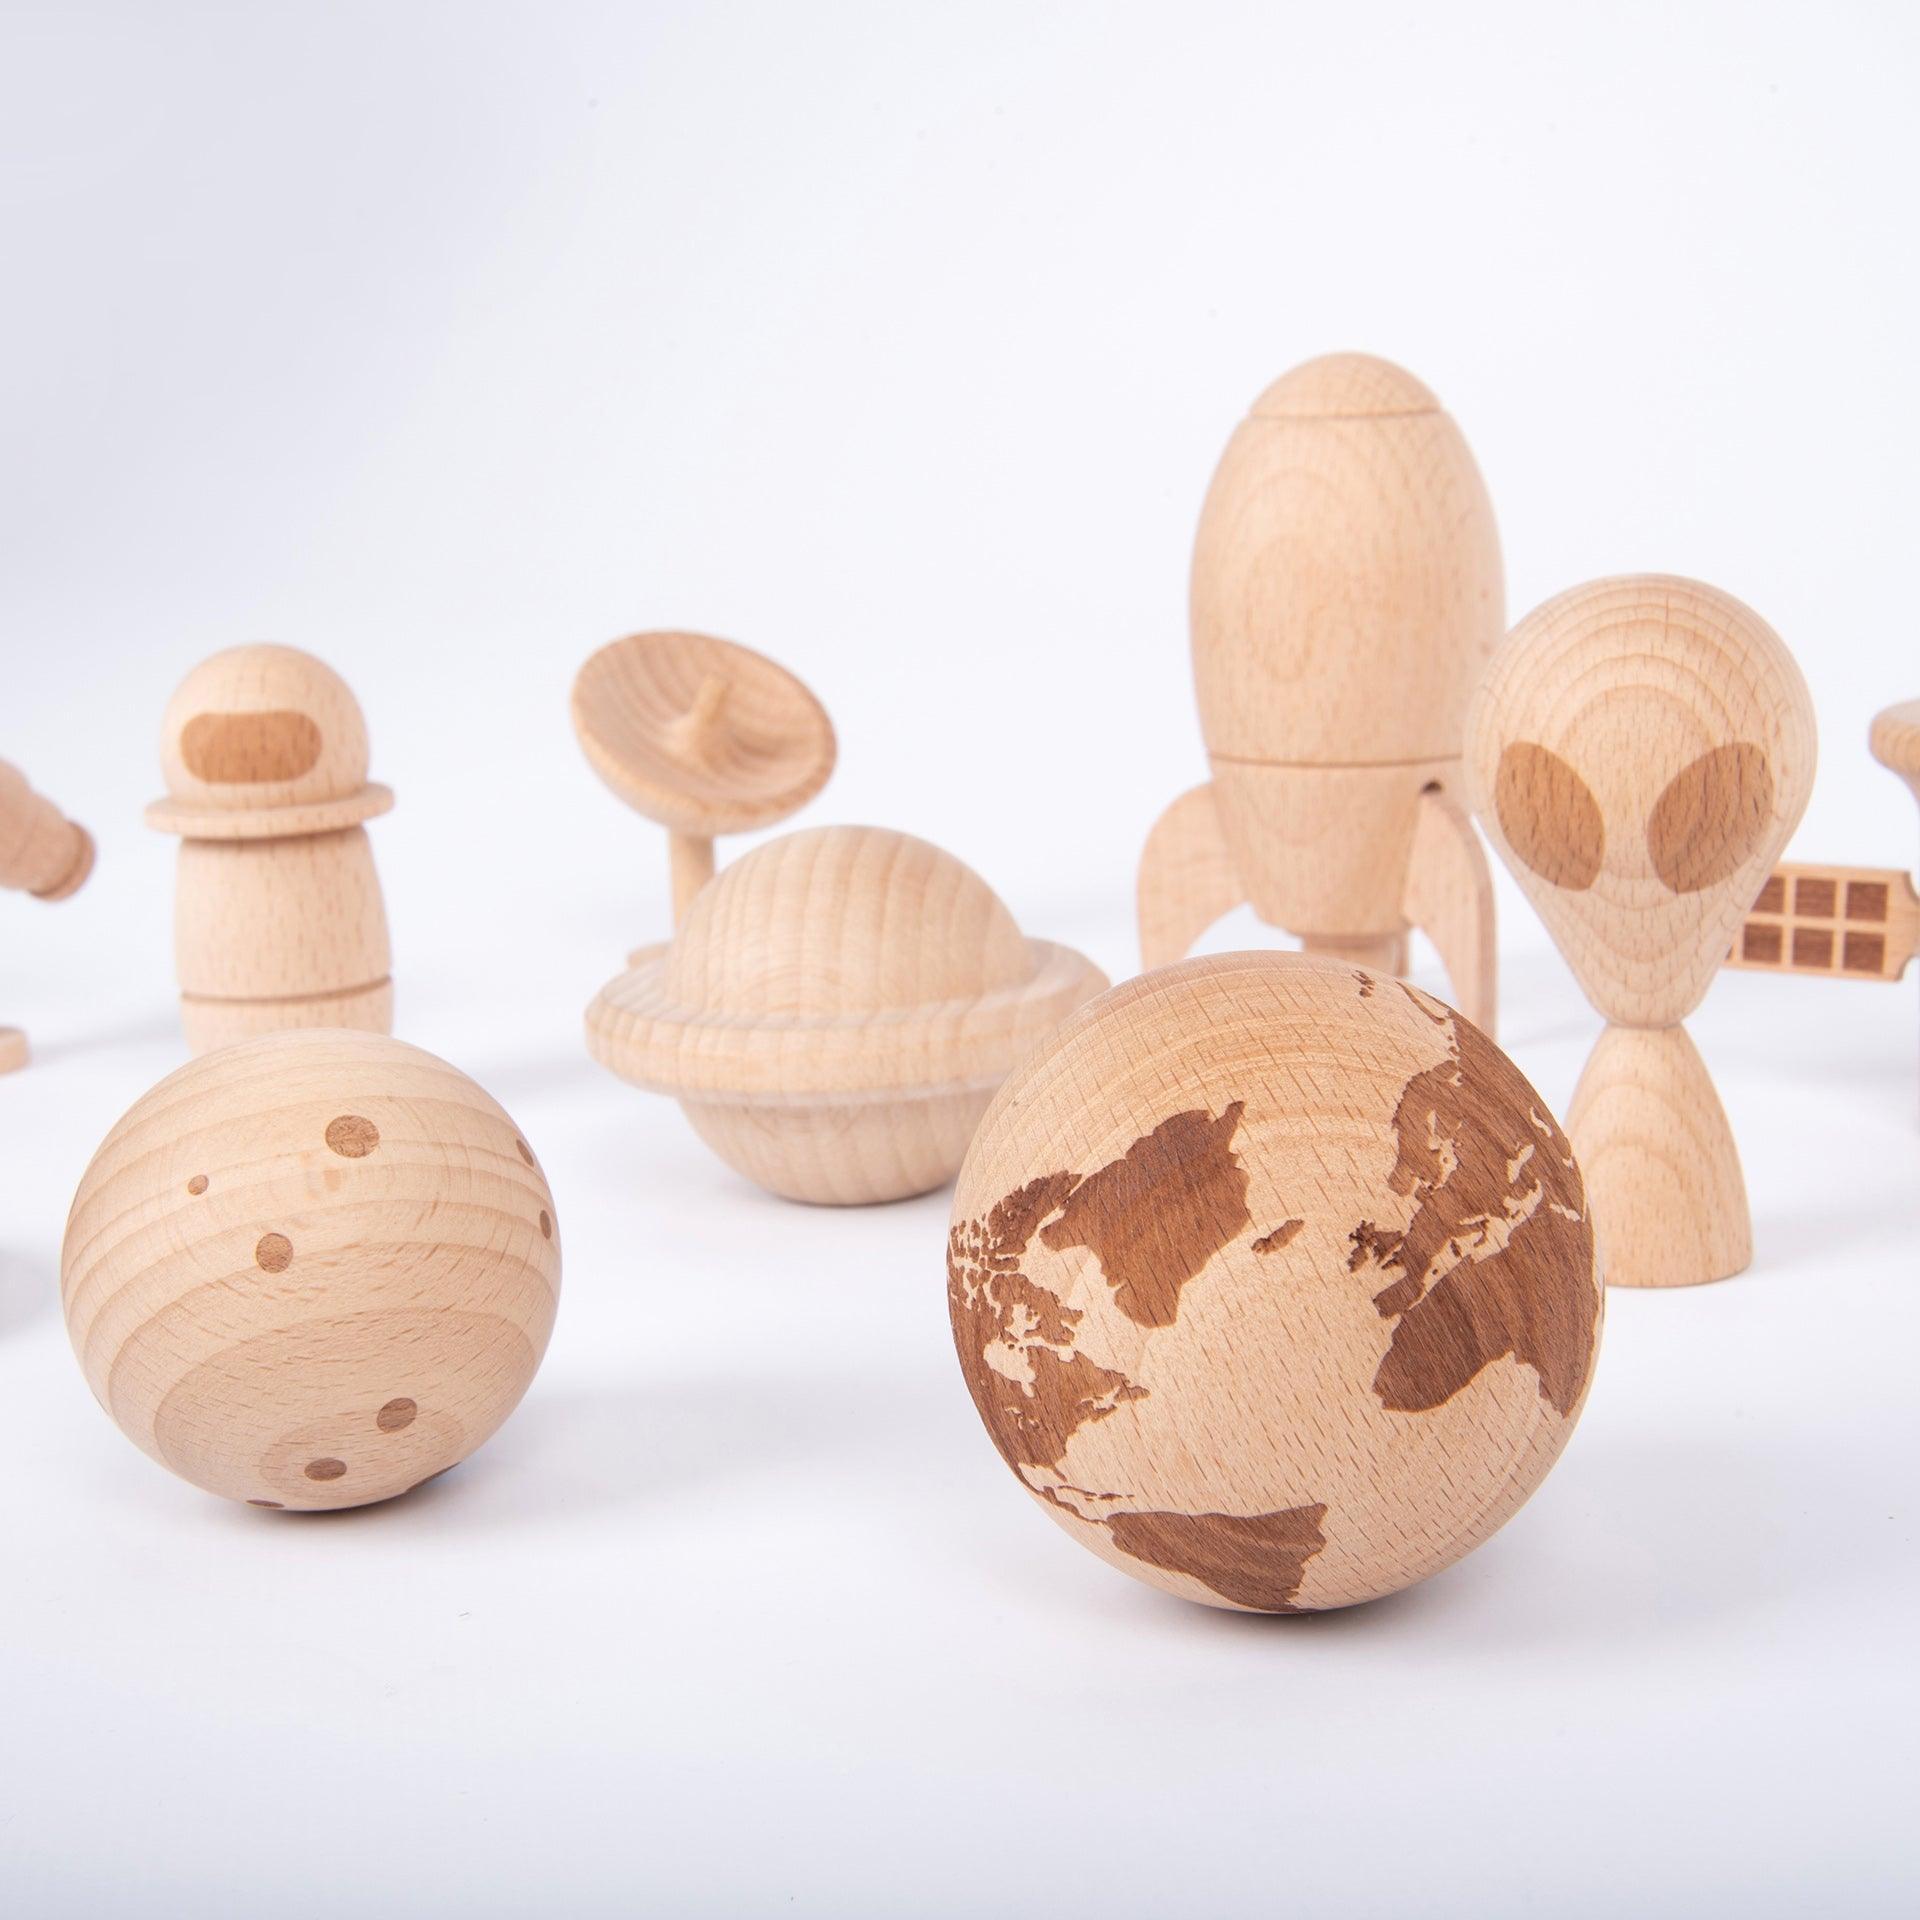 TickiT: Wooden Space Adventure дървени космически фигури 10 ел.